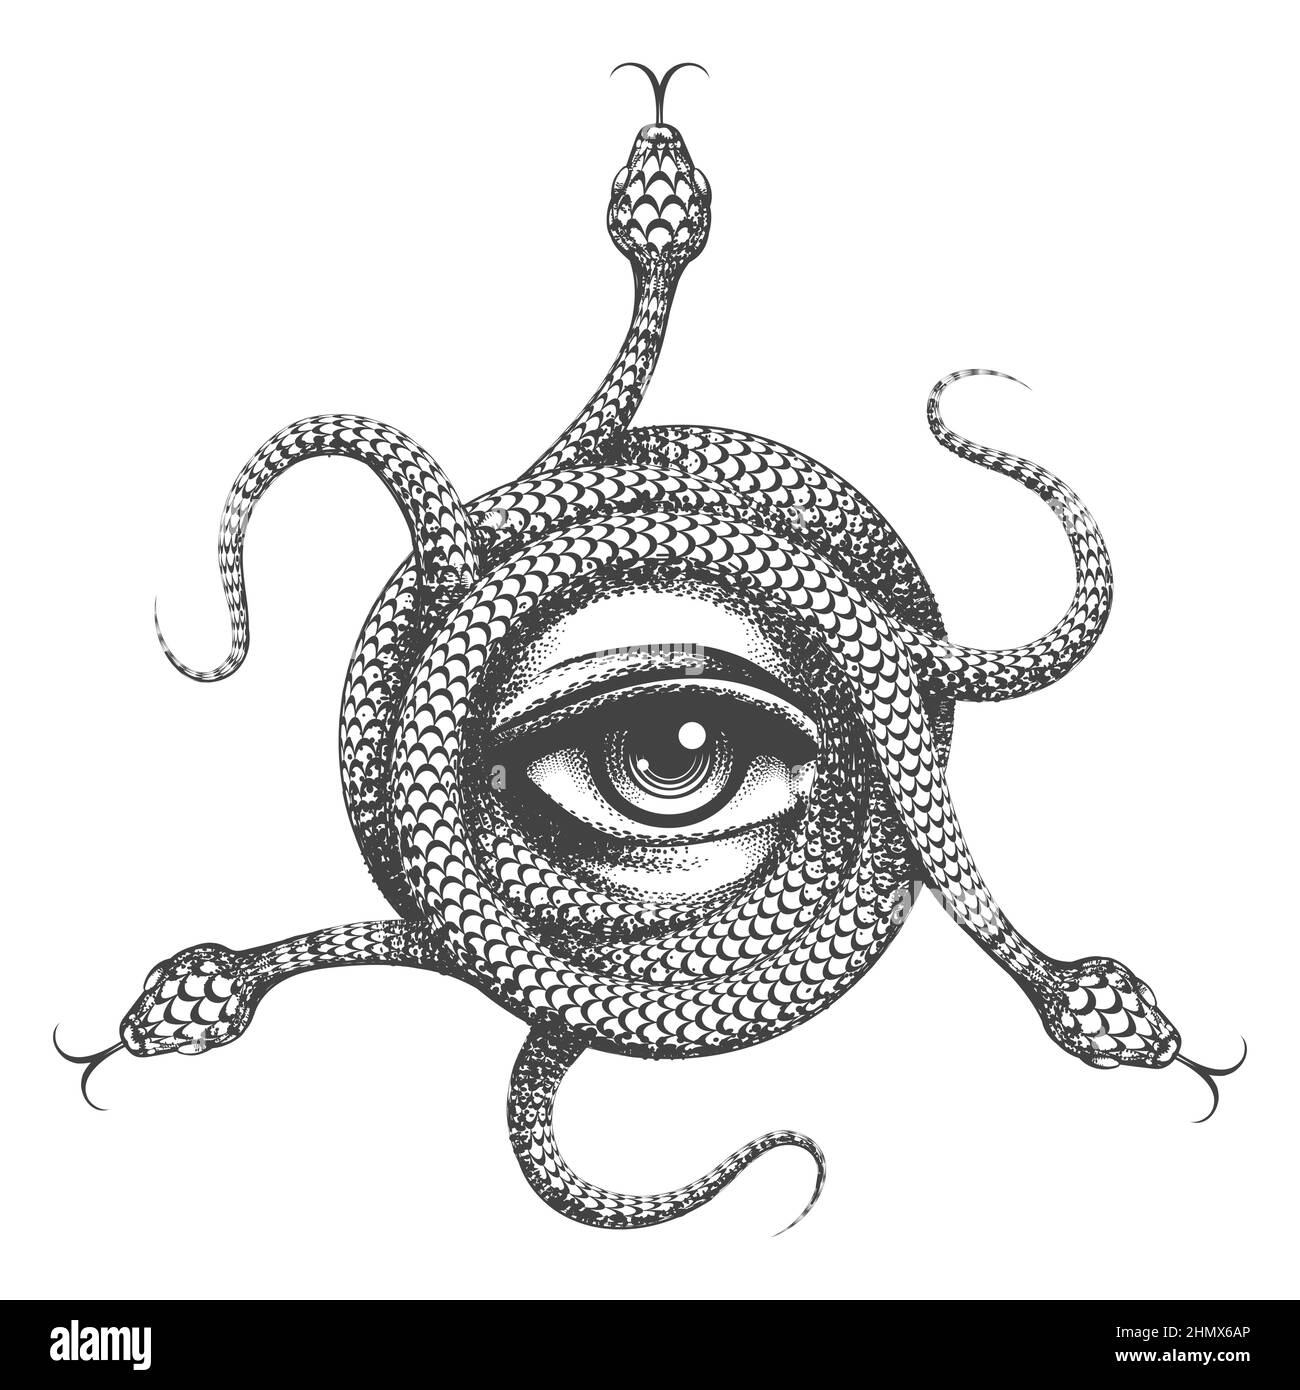 Tatouage de tous les yeux à l'intérieur de Snake Knot. Symbole maçonnique dessiné à la main sur fond blanc. Illustration vectorielle. Illustration de Vecteur